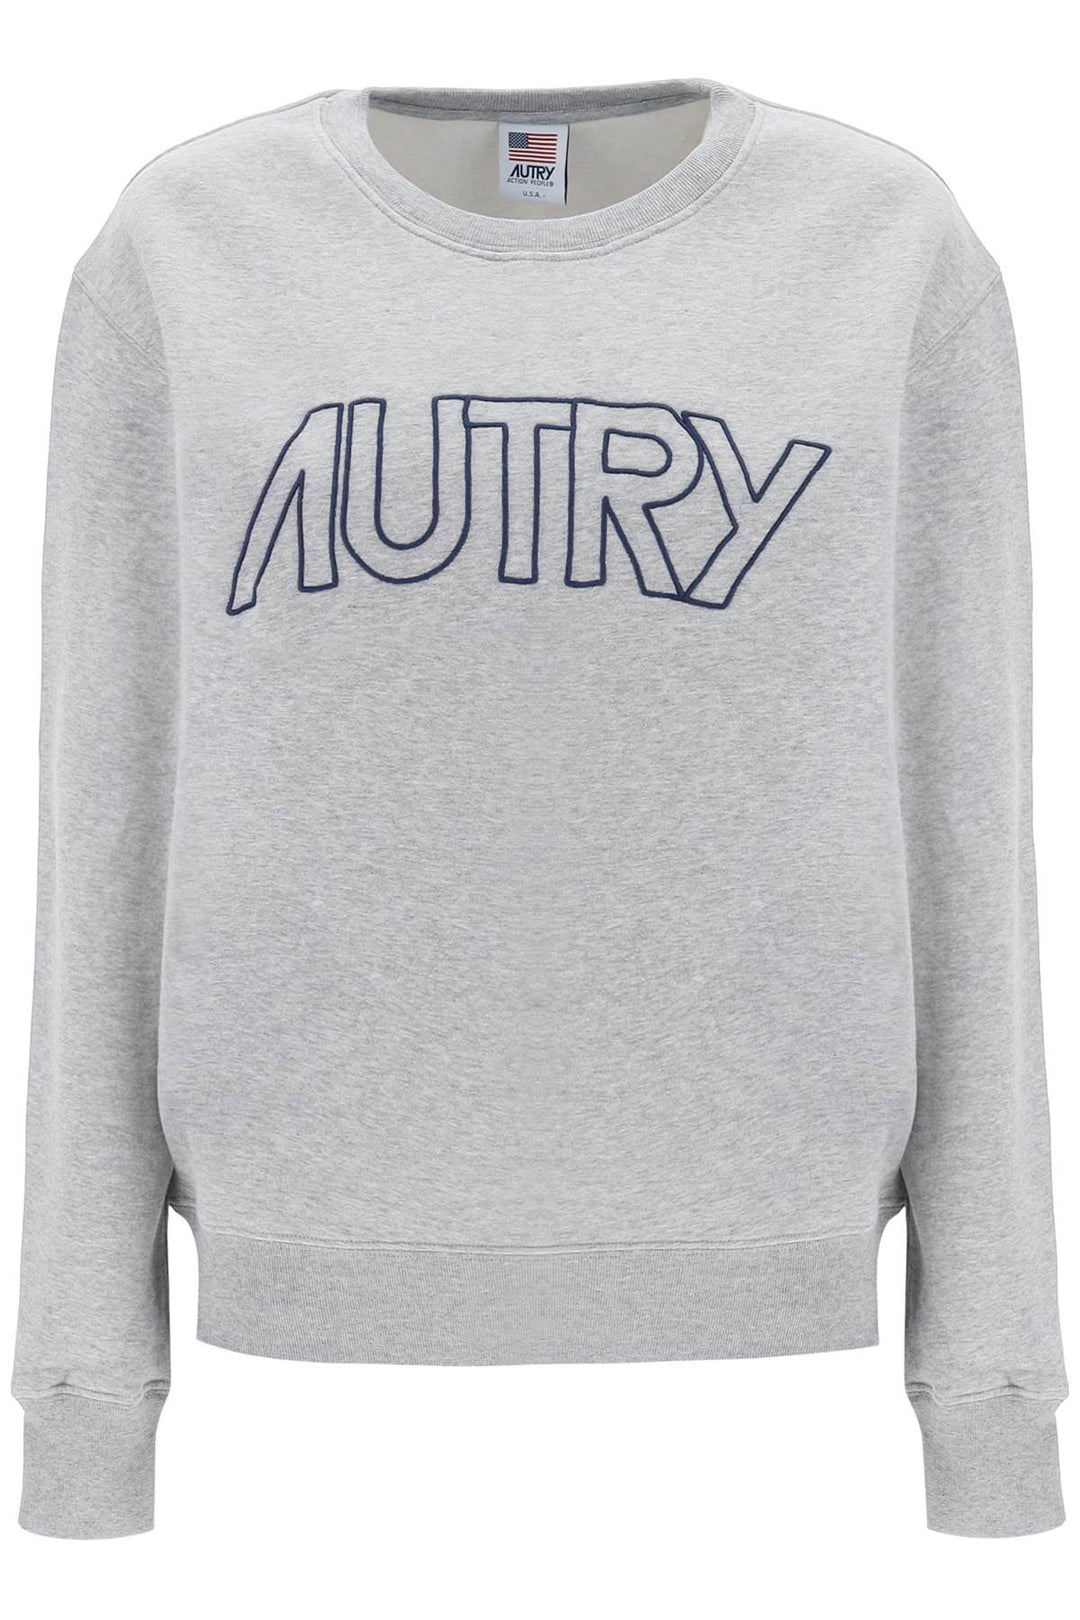 Autry Crew Neck Sweatshirt With Logo Embroidery   Grigio